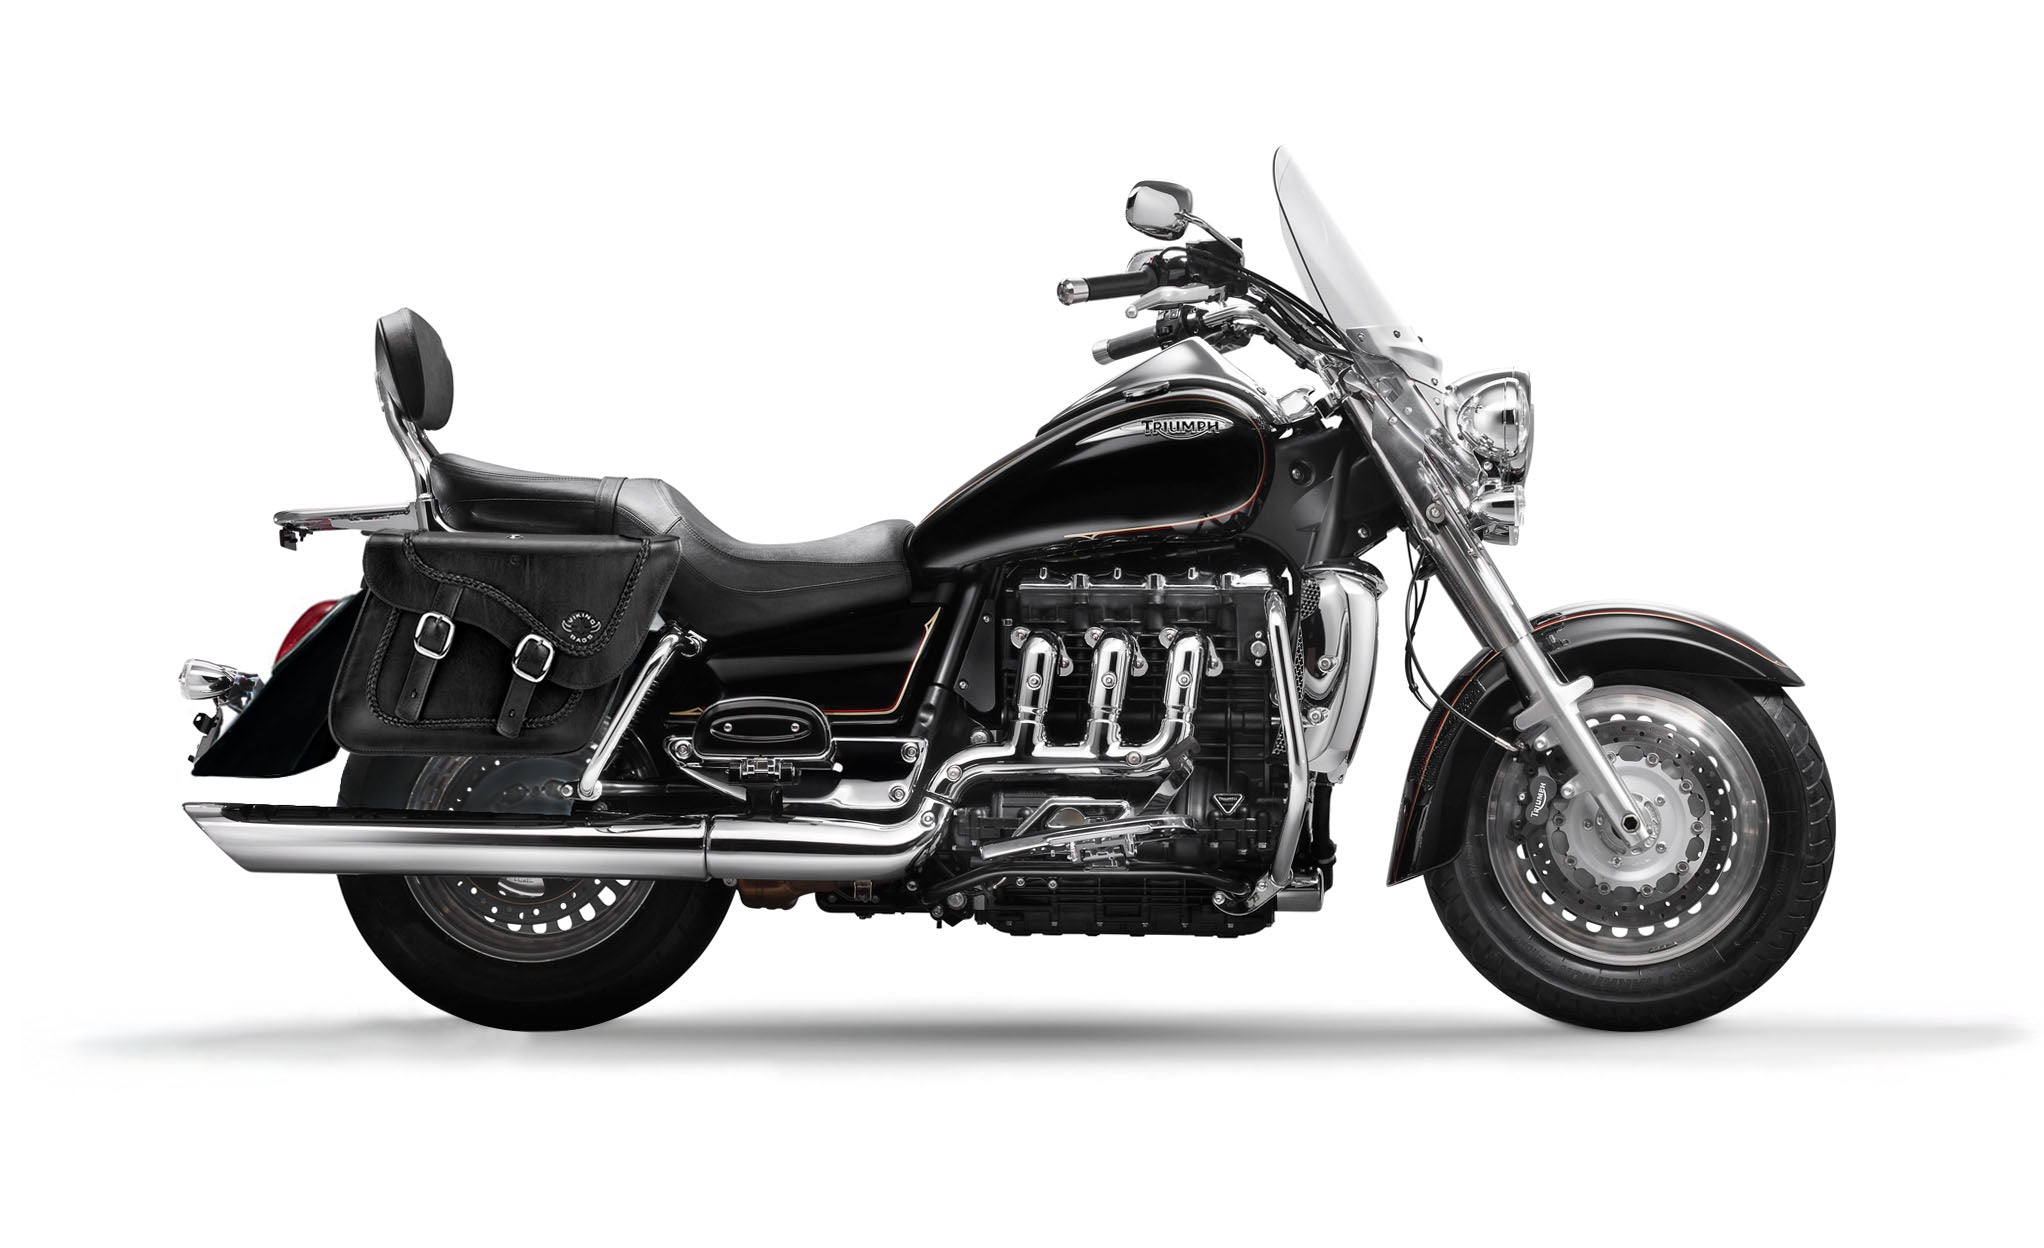 Viking Americano Triumph Rocket Iii Touring Braided Large Leather Motorcycle Saddlebags on Bike Photo @expand